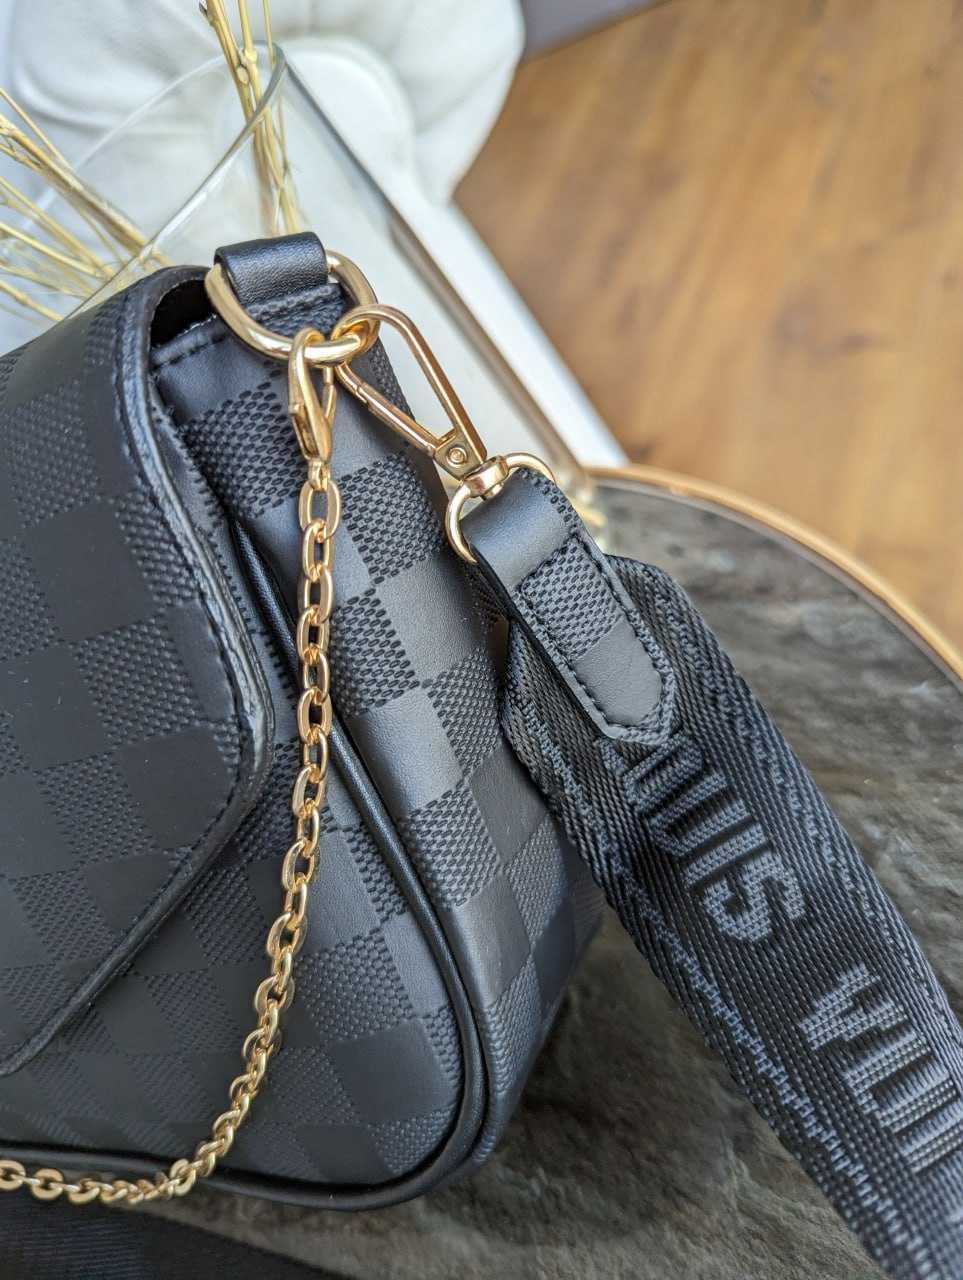 Жіноча сумочка ЛВ через плече чорна/Женская сумка/Louis Vuitton 2 в 1